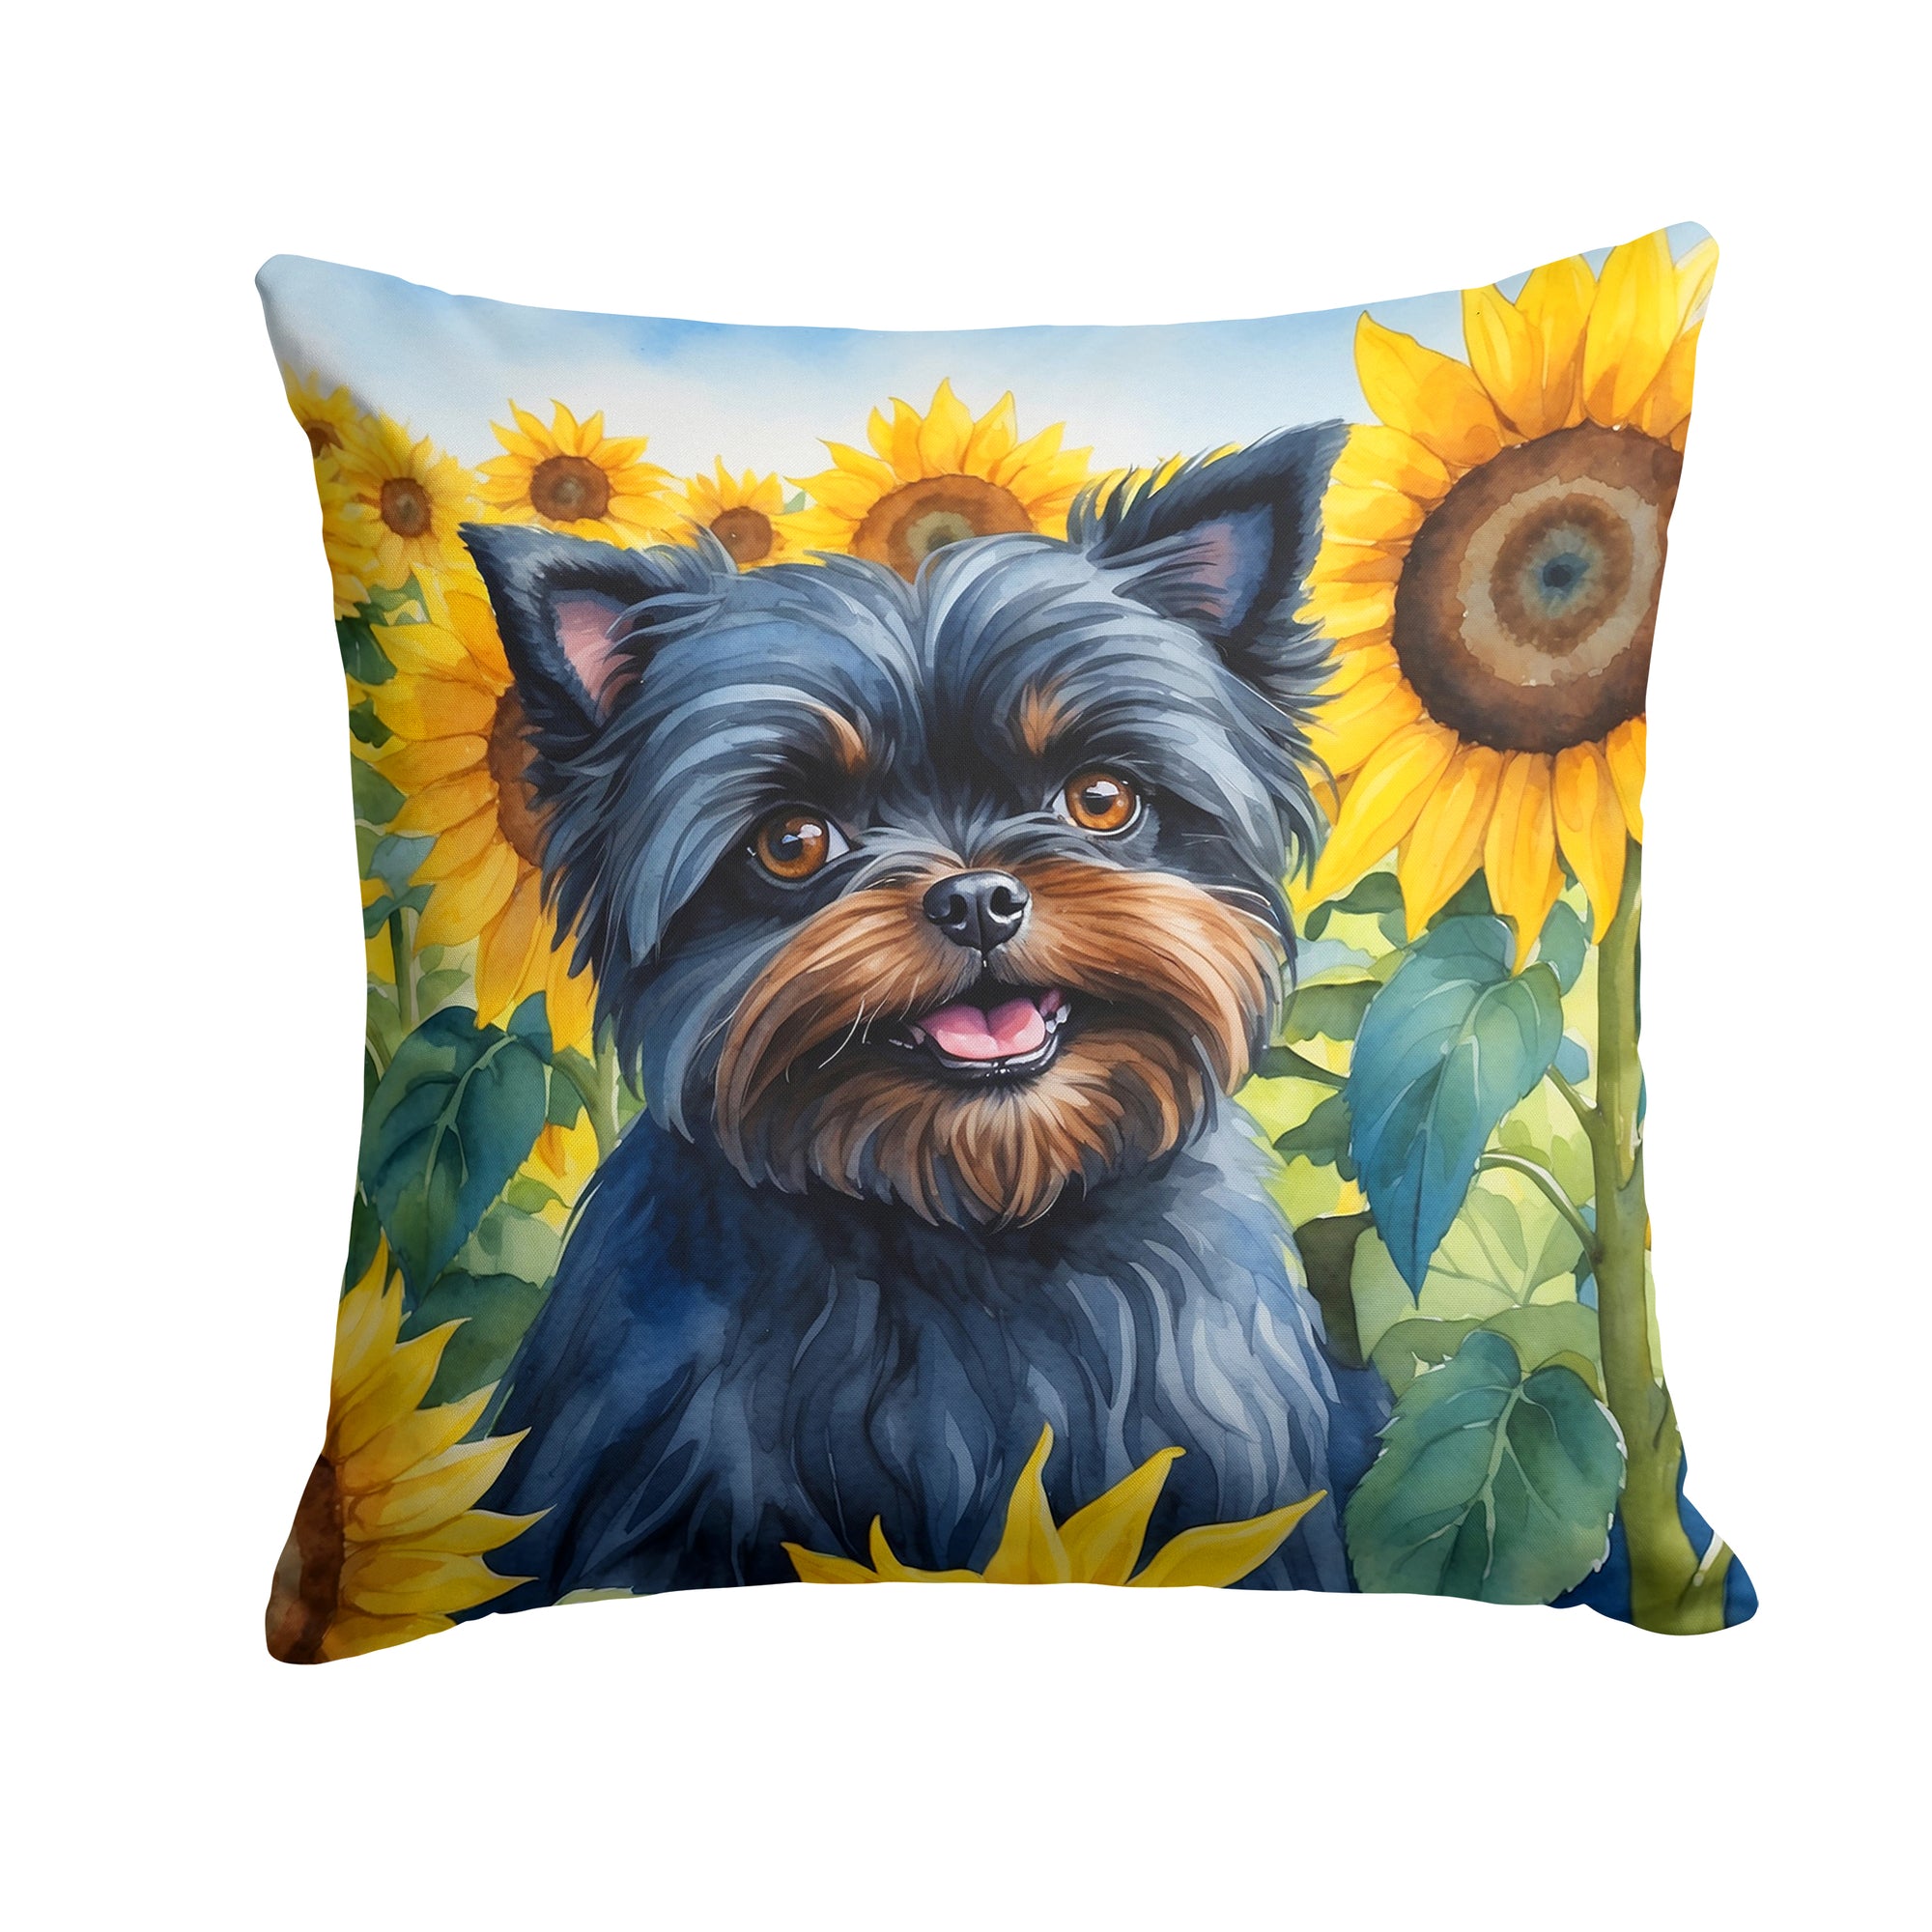 Buy this Affenpinscher in Sunflowers Throw Pillow